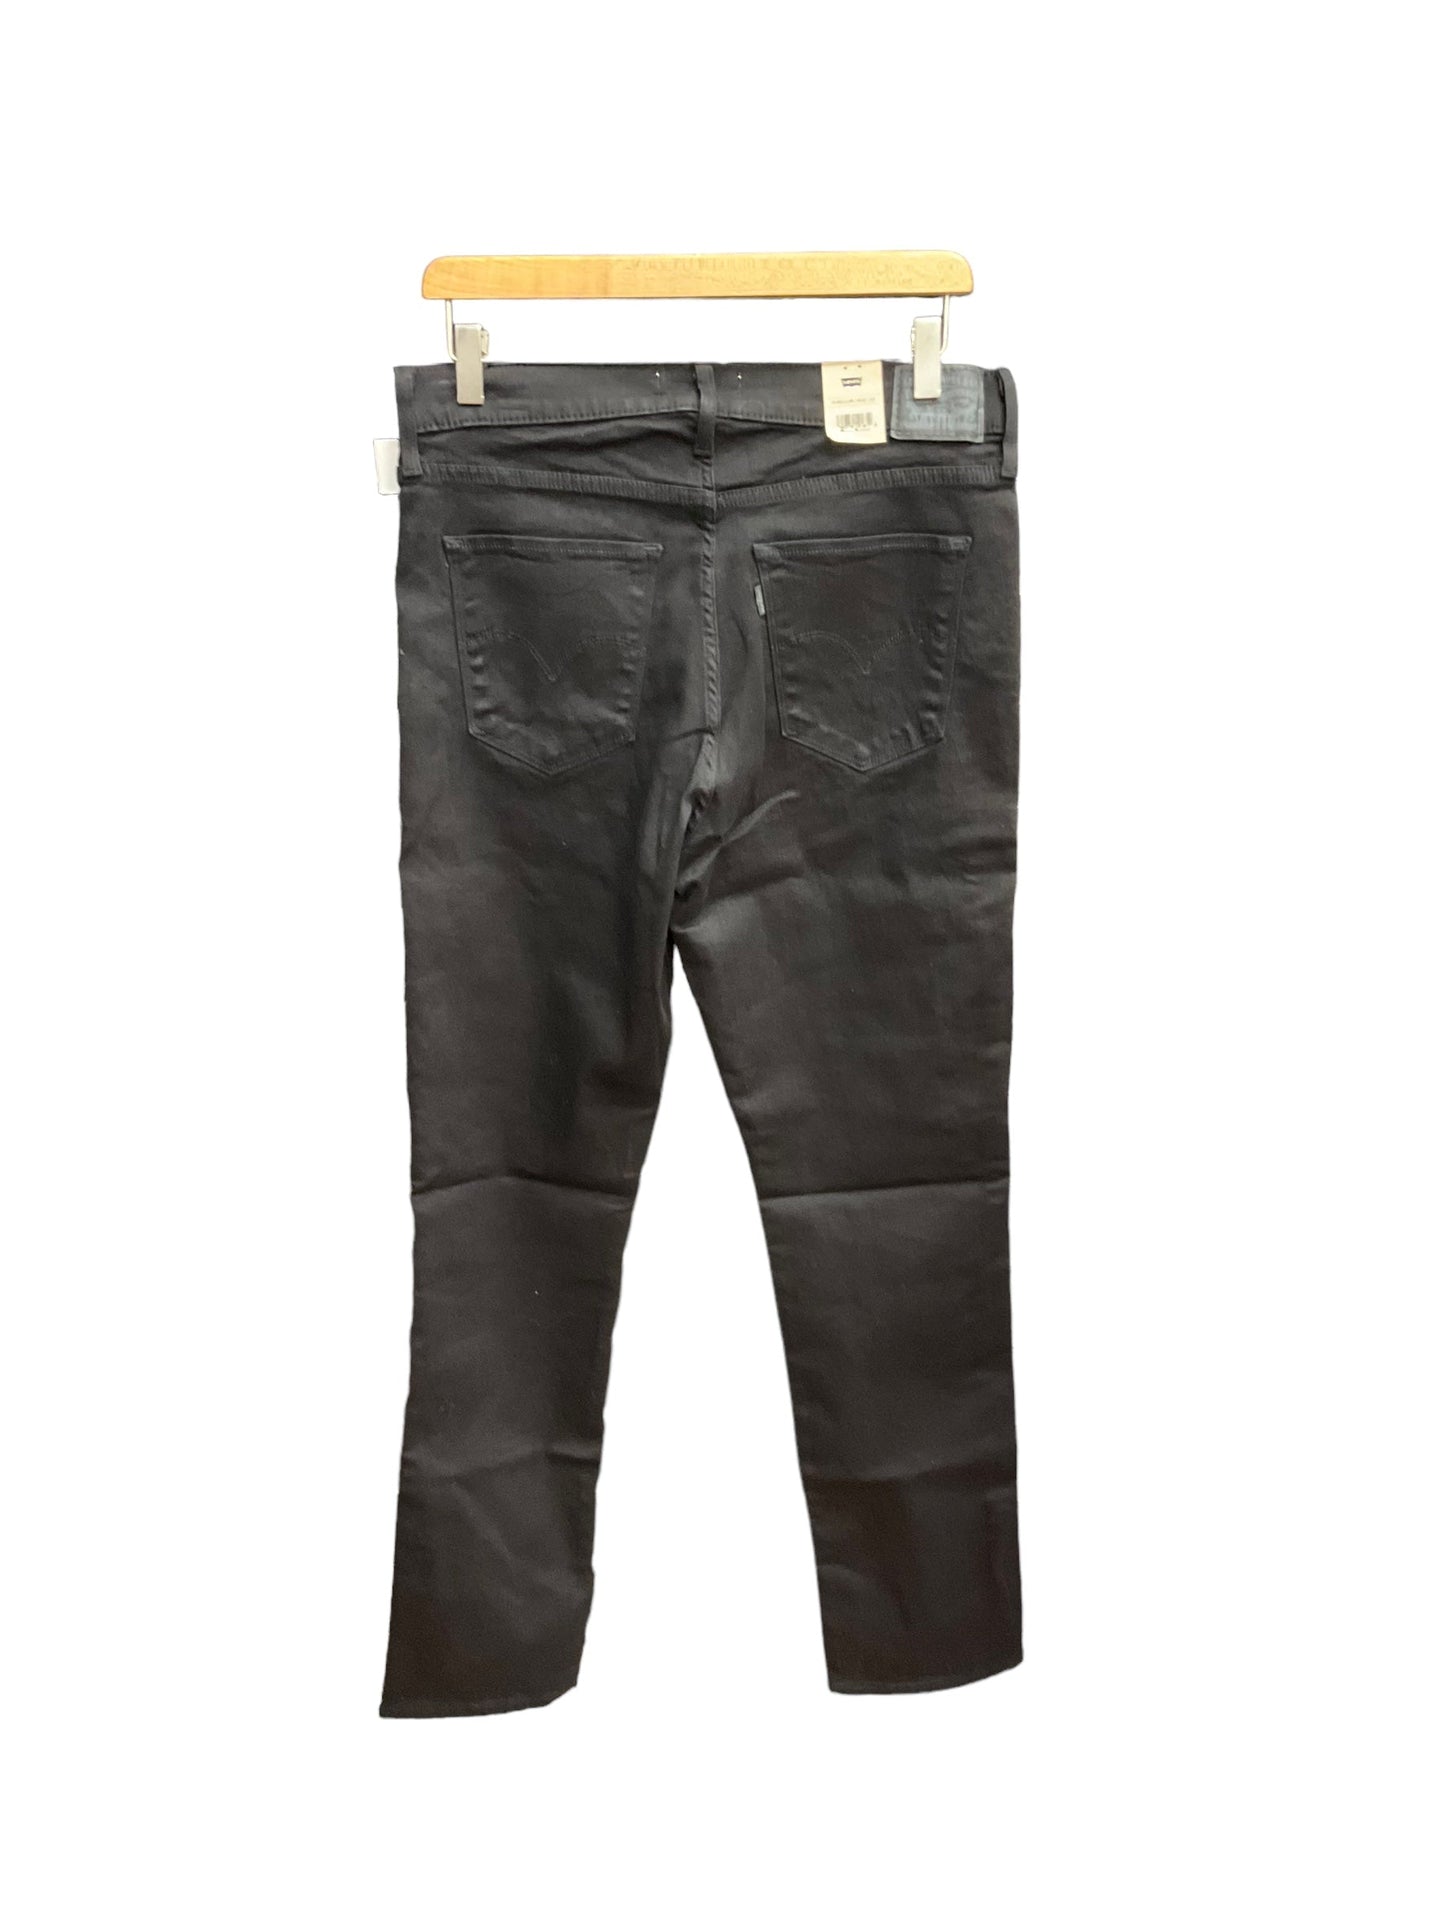 Black Pants Cargo & Utility Levis, Size 14